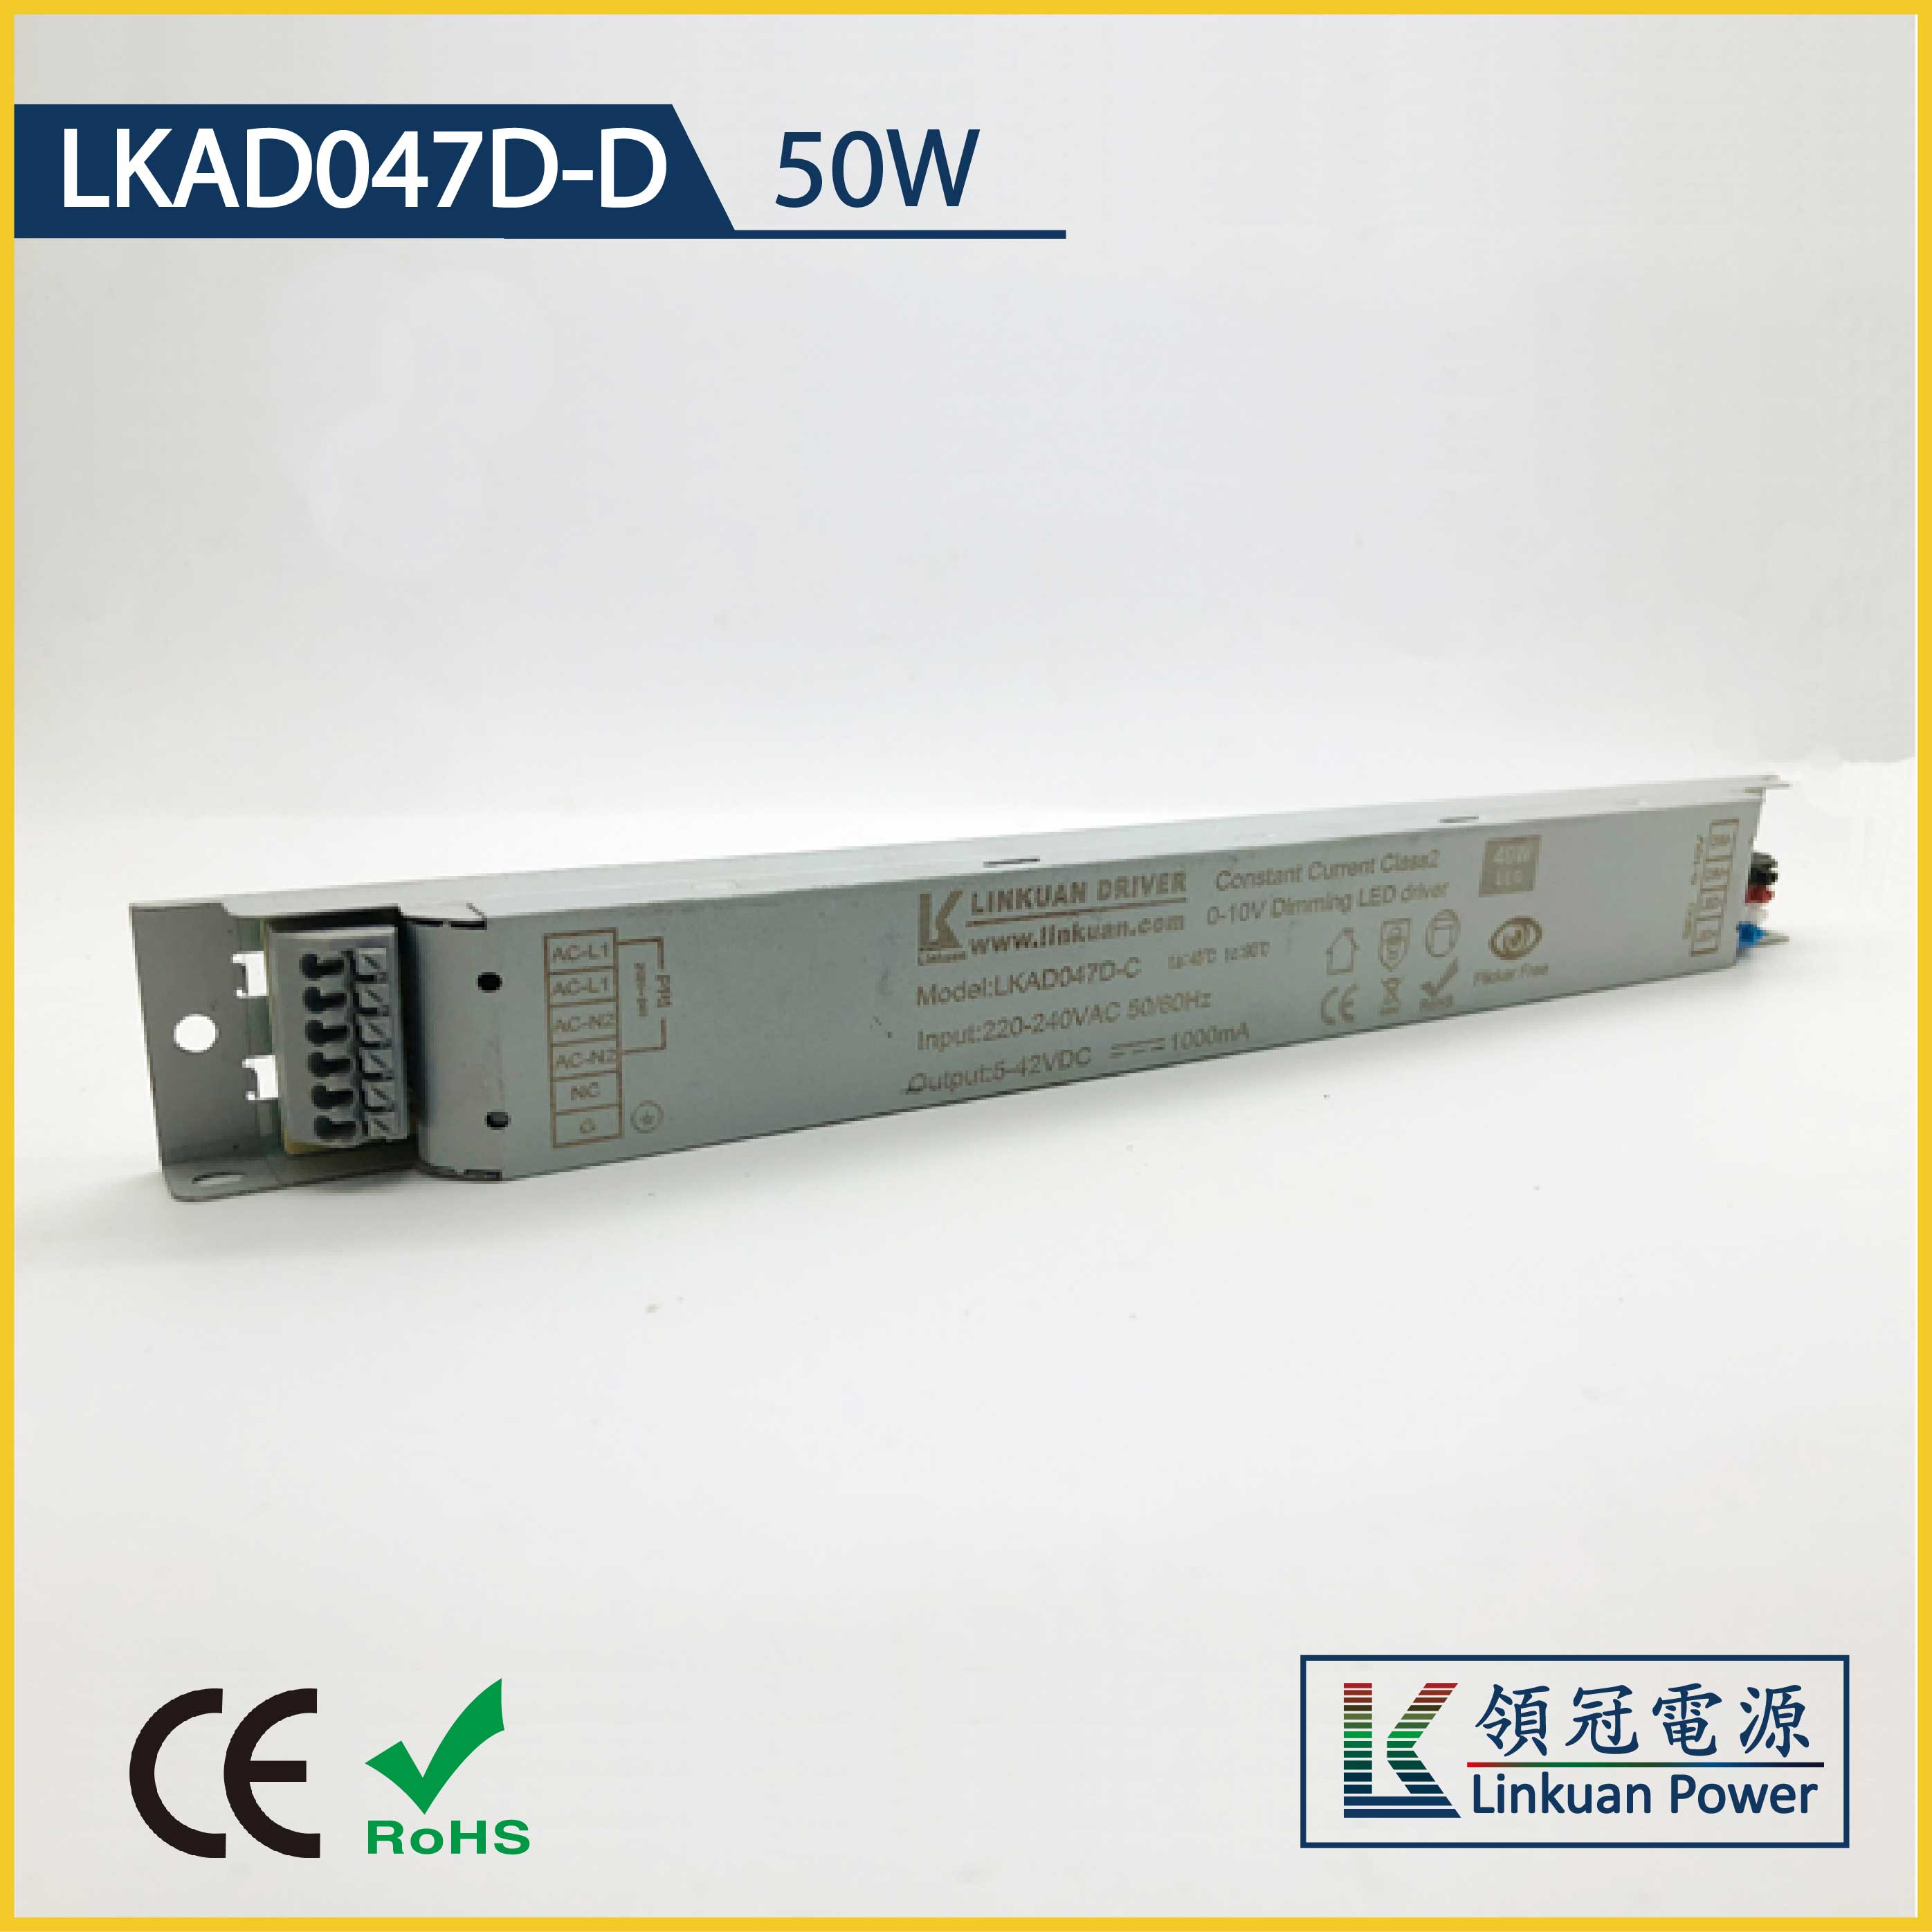 LKAD047D-D 50W 5-42V 1200mA Linear Lamp DALI dimming  led driver